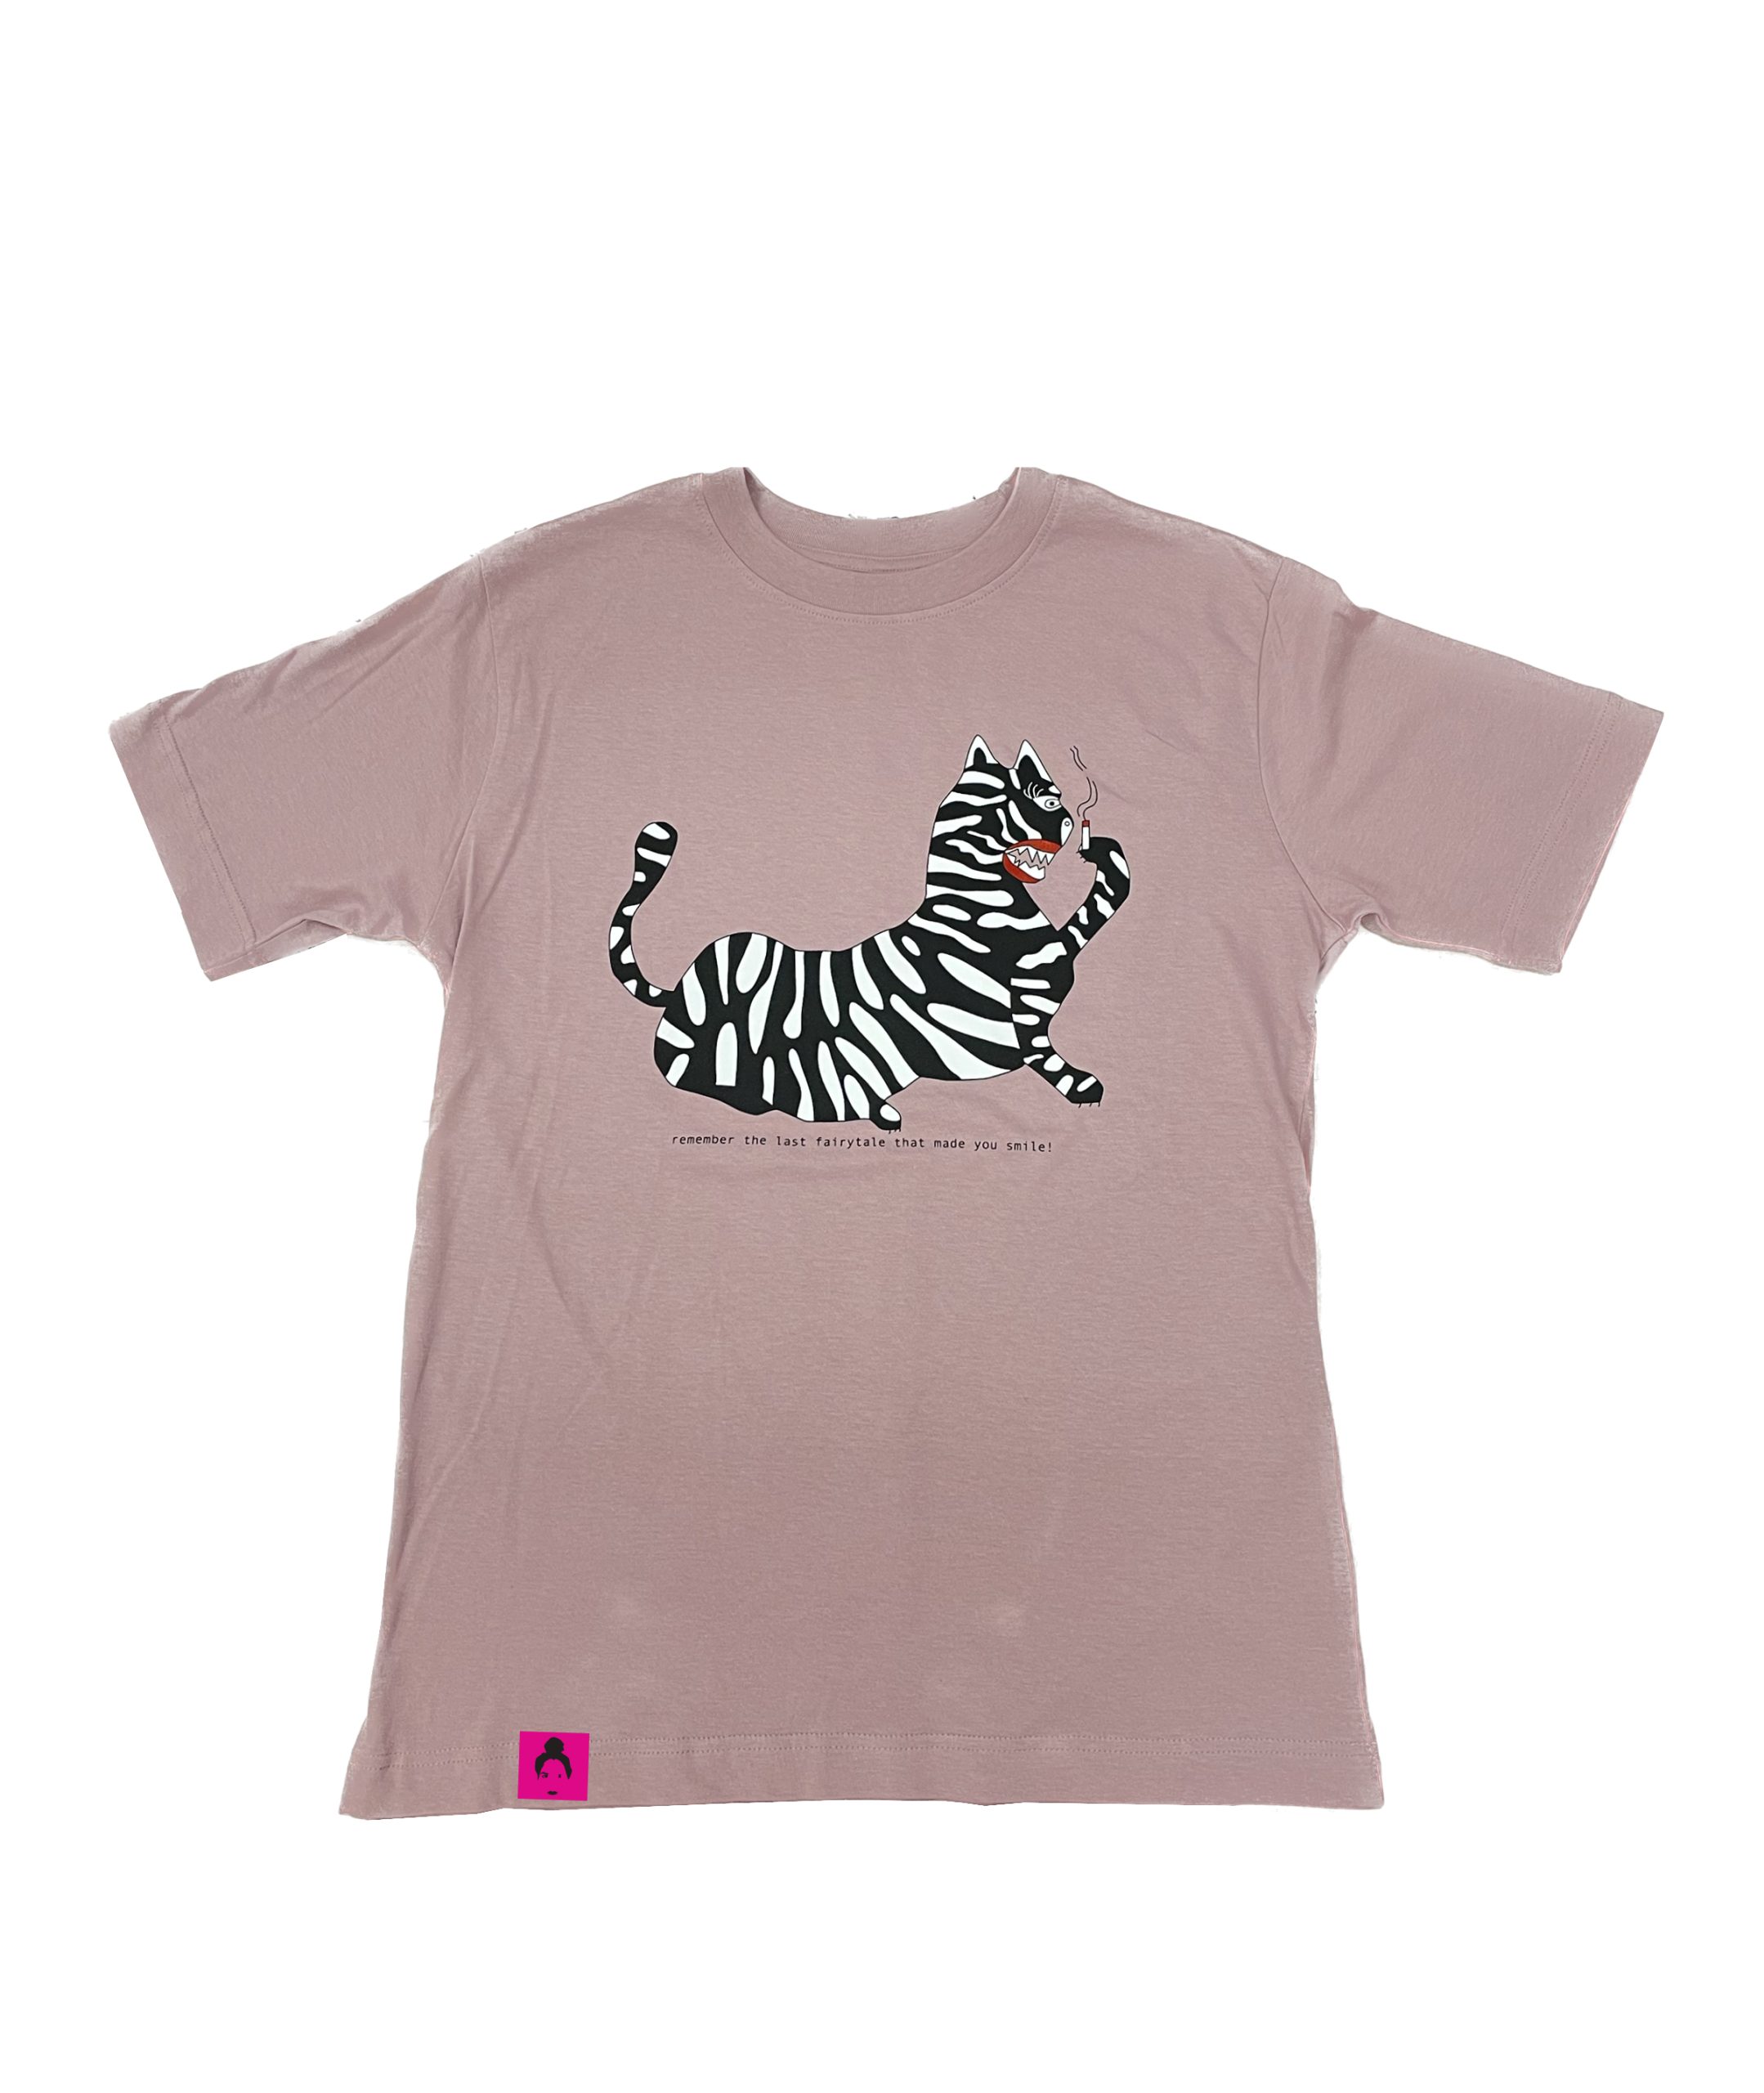 The tiger sirène t-shirt(pink) – Klelia Andrali